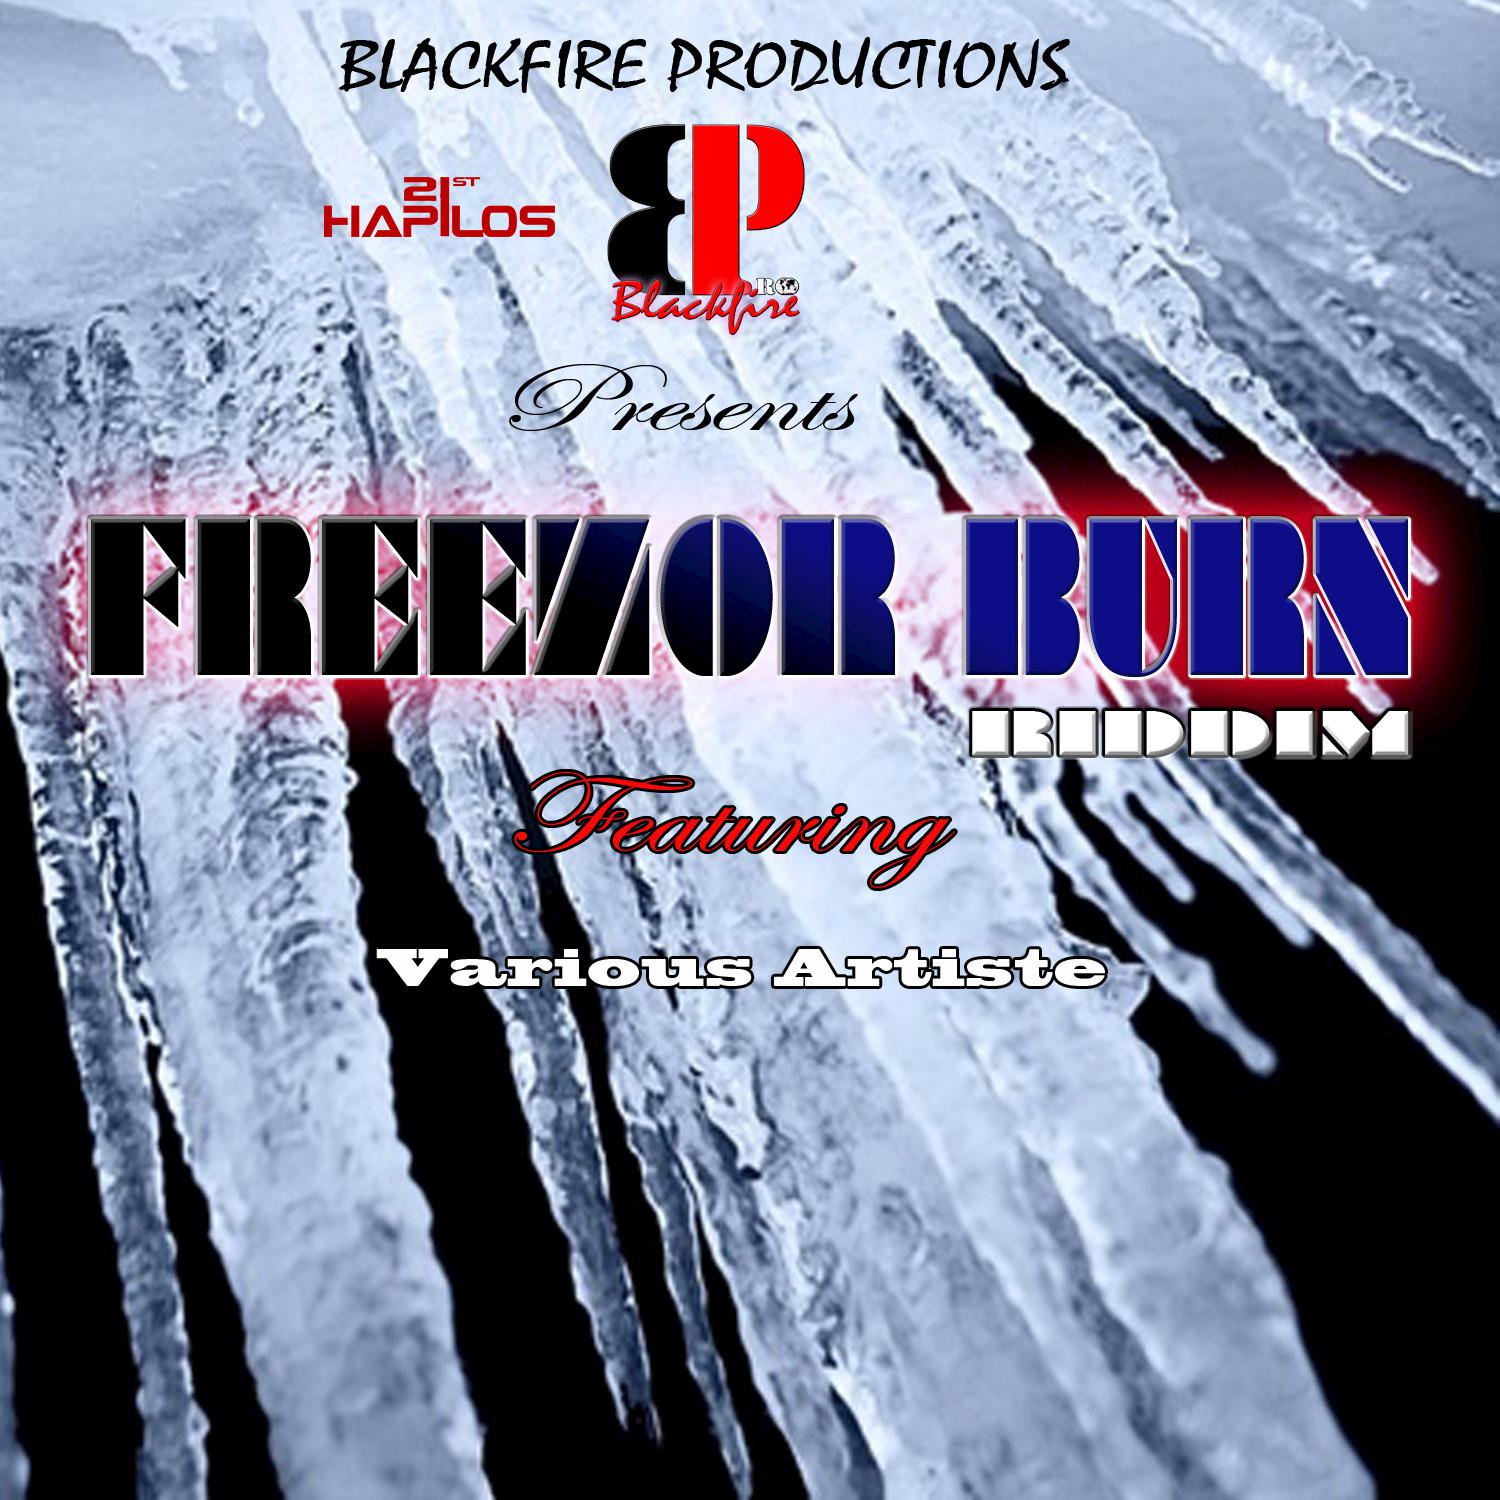 Freezor Burn Riddim